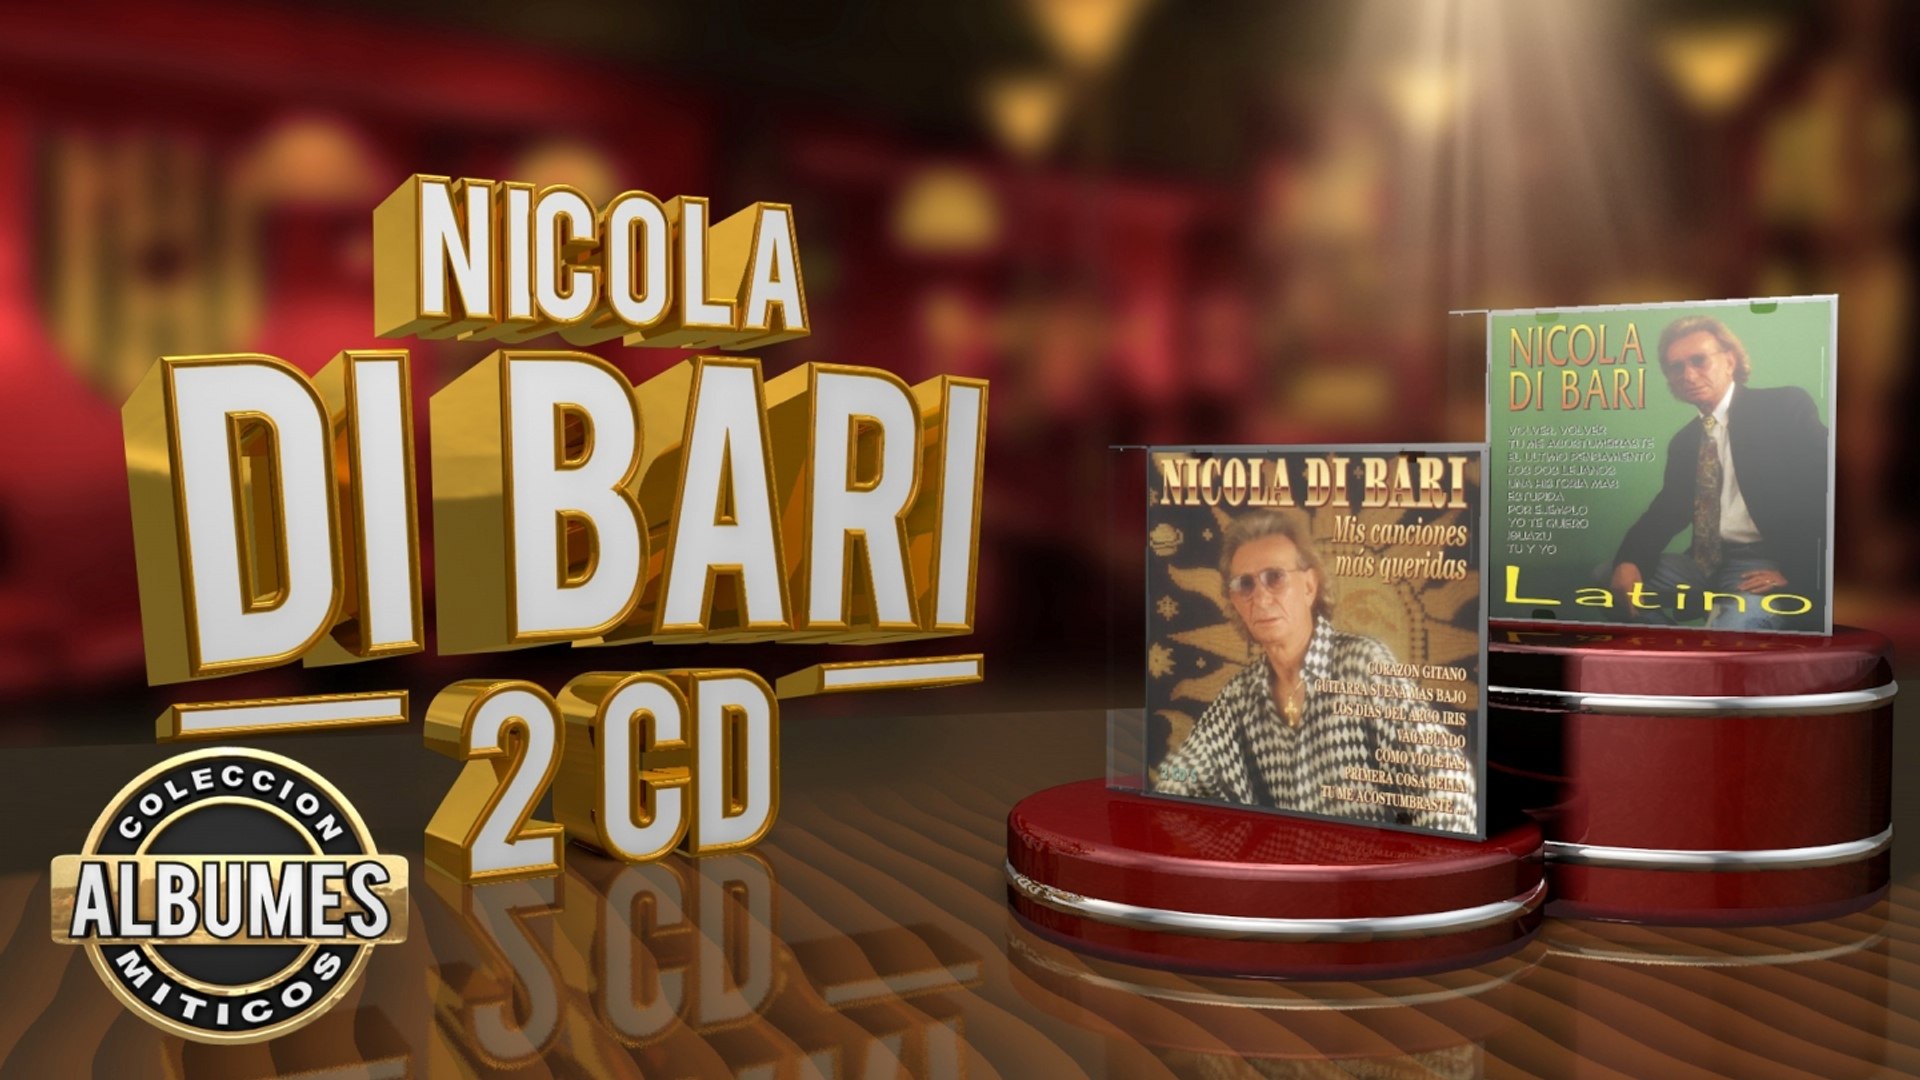 Nicola di Bari - 2 cds - Colección "Álbumes Míticos" - Vídeo Dailymotion